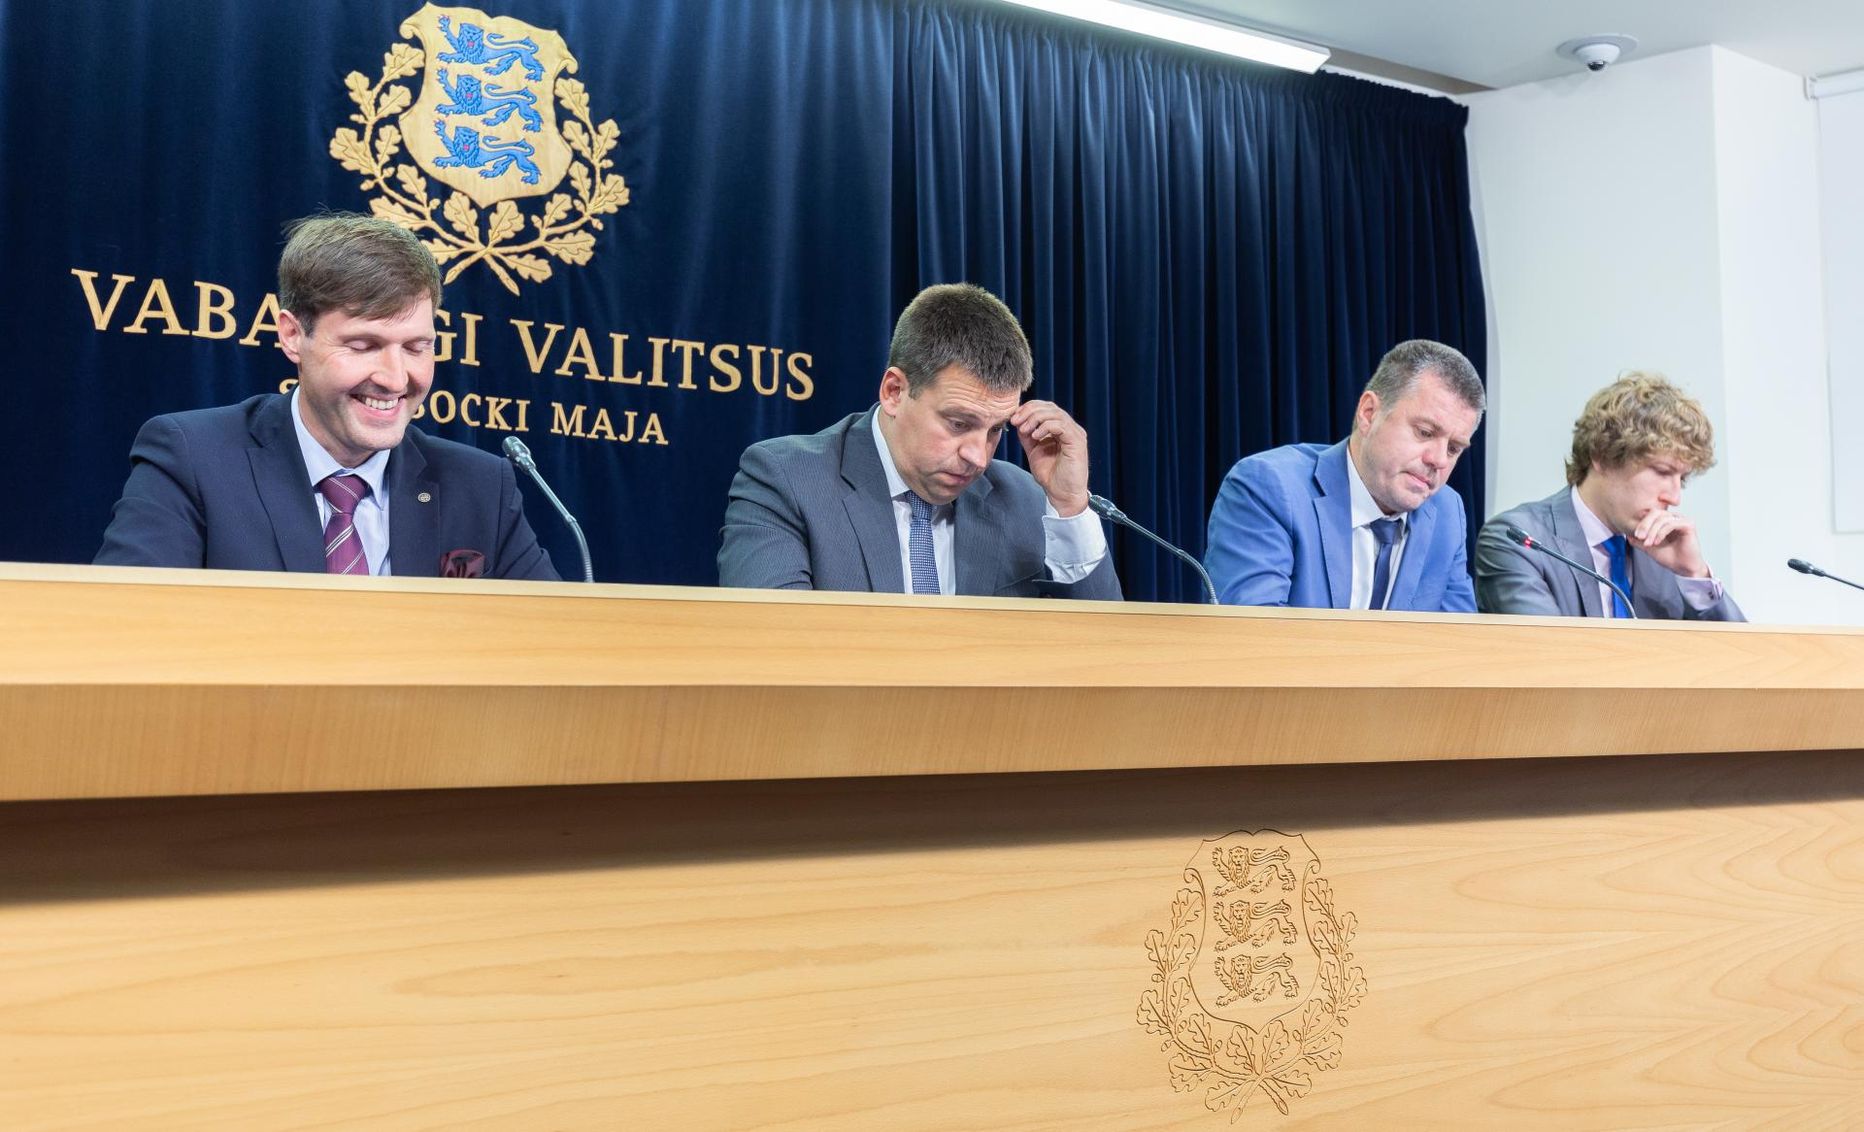 Kes neist on parimad väitlejad? Martin Helme (vasakult), Jüri Ratas, Urmas Reinsalu ja Tanel Kiik valitsuse pressikonverentsil.